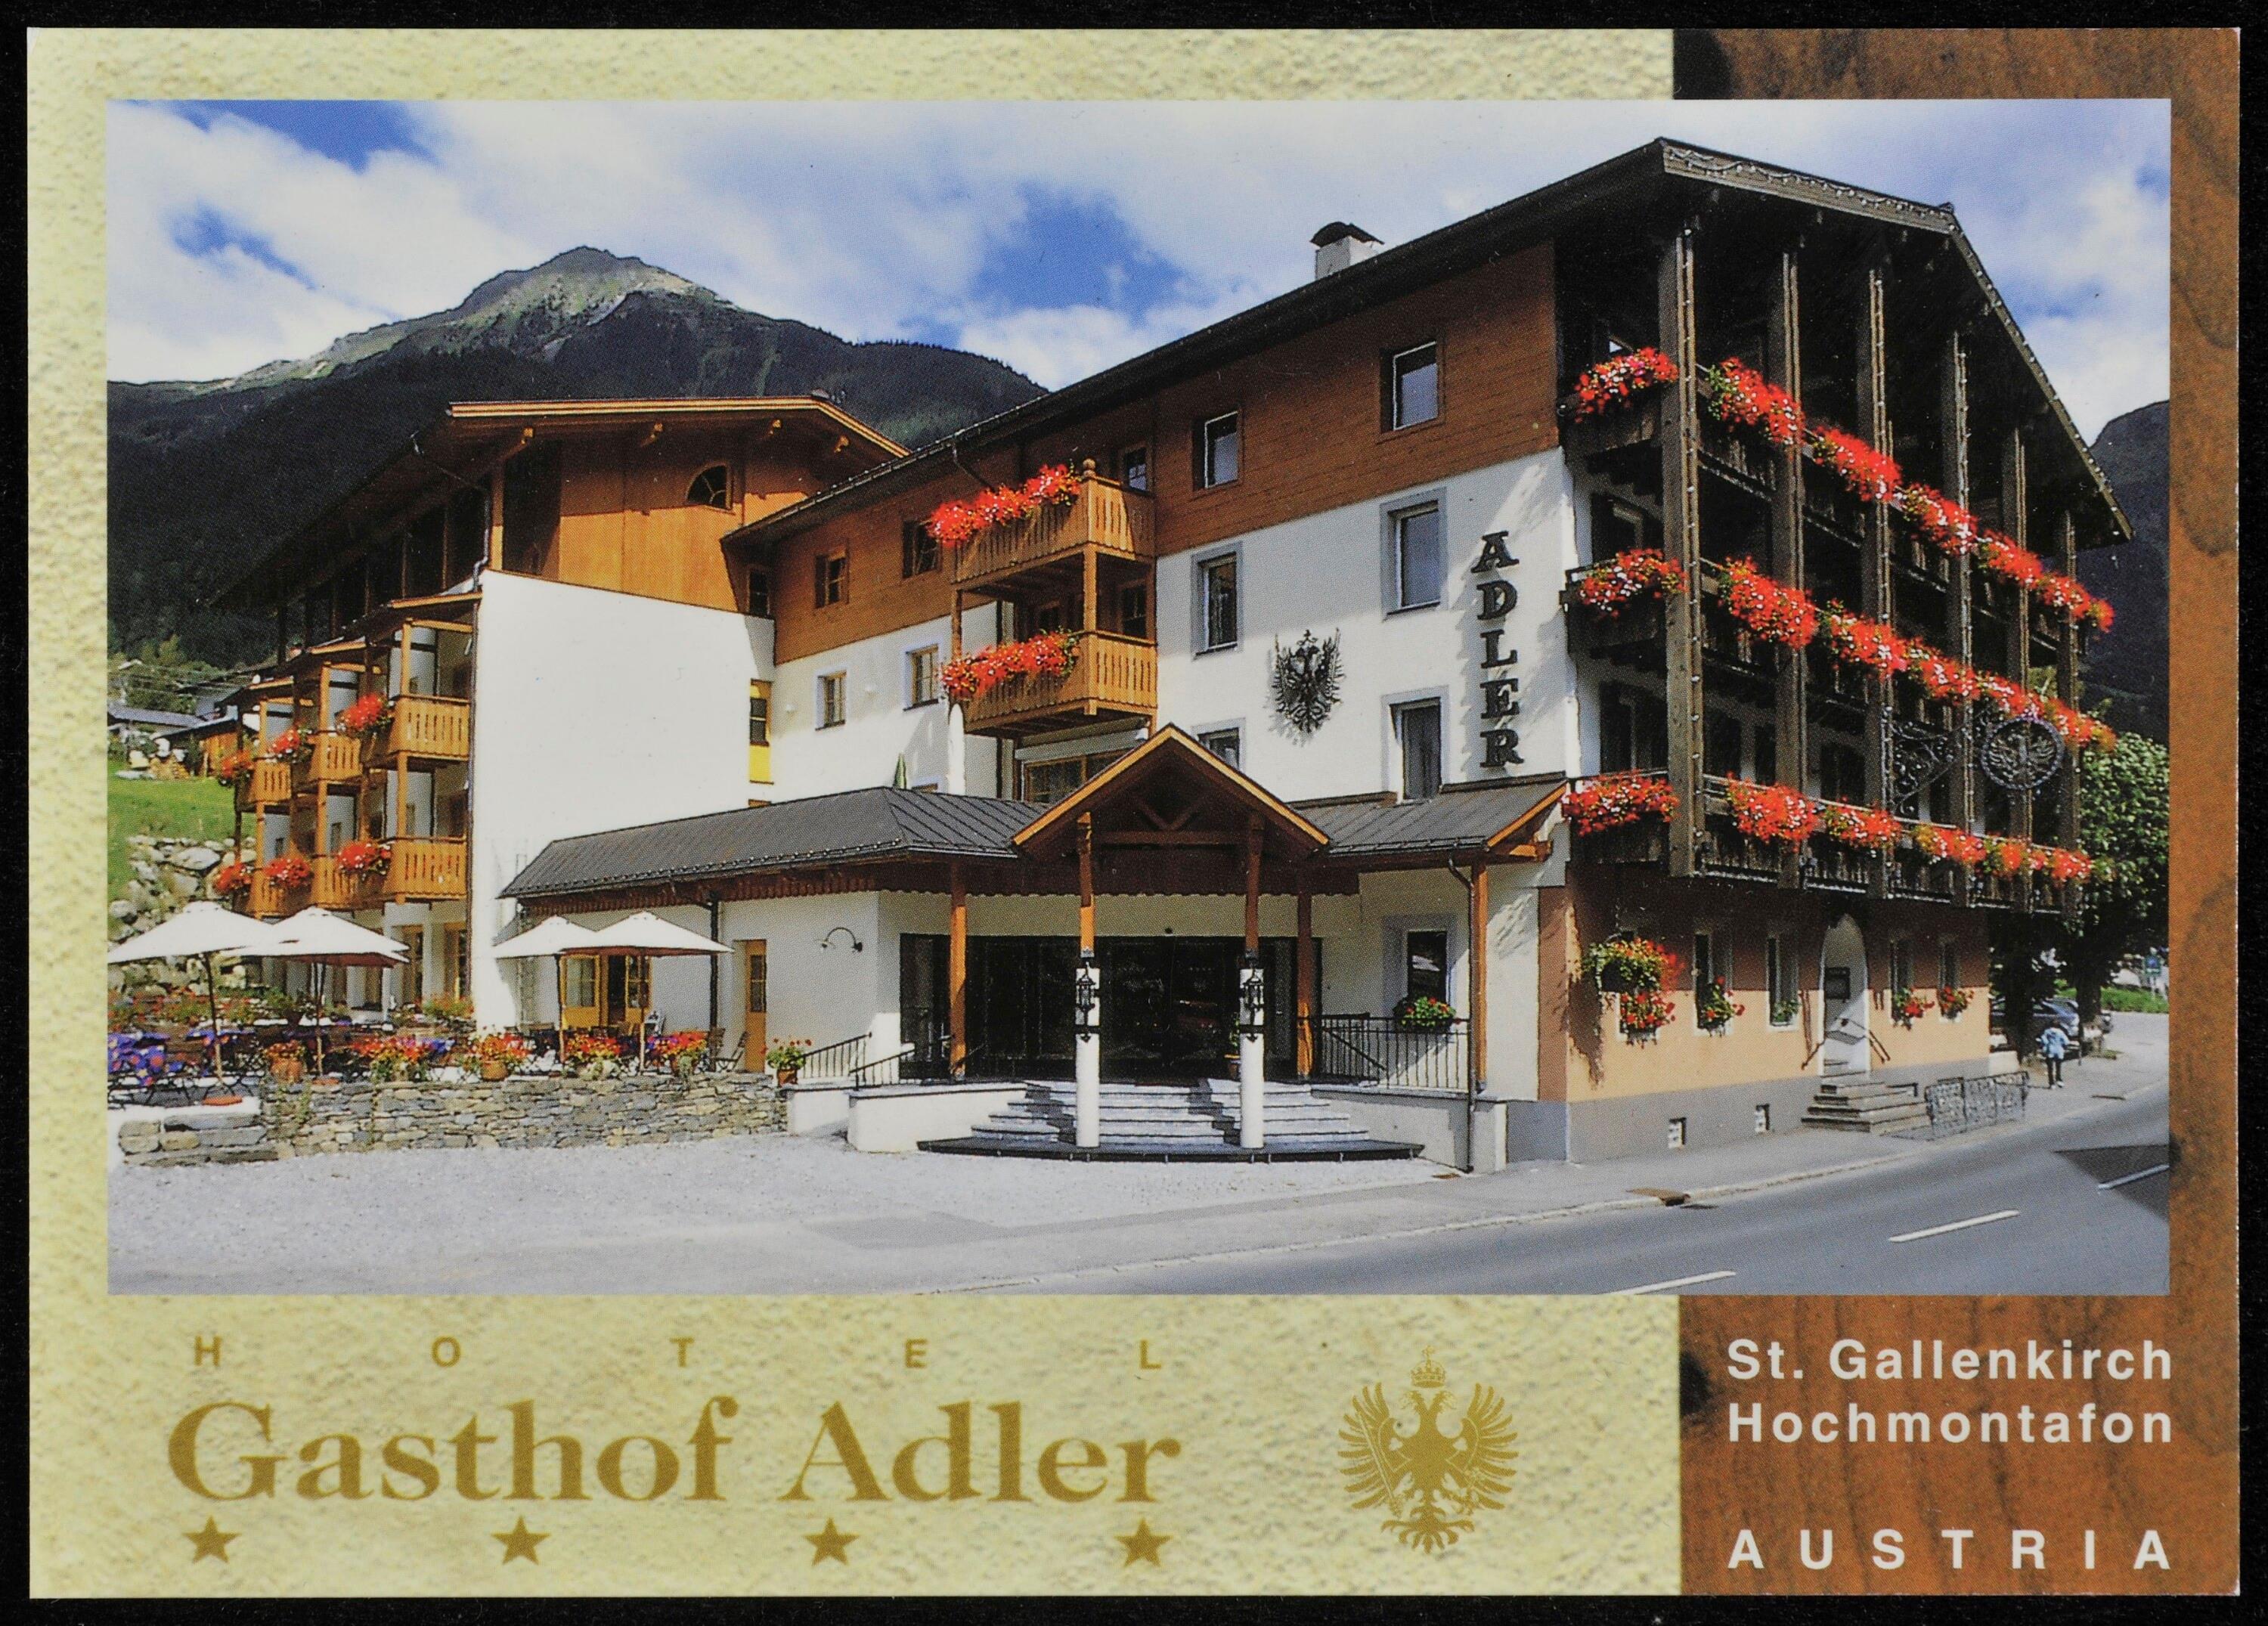 Hotel Gasthof Adler St. Gallenkirch, Hochmontafon, Austria></div>


    <hr>
    <div class=